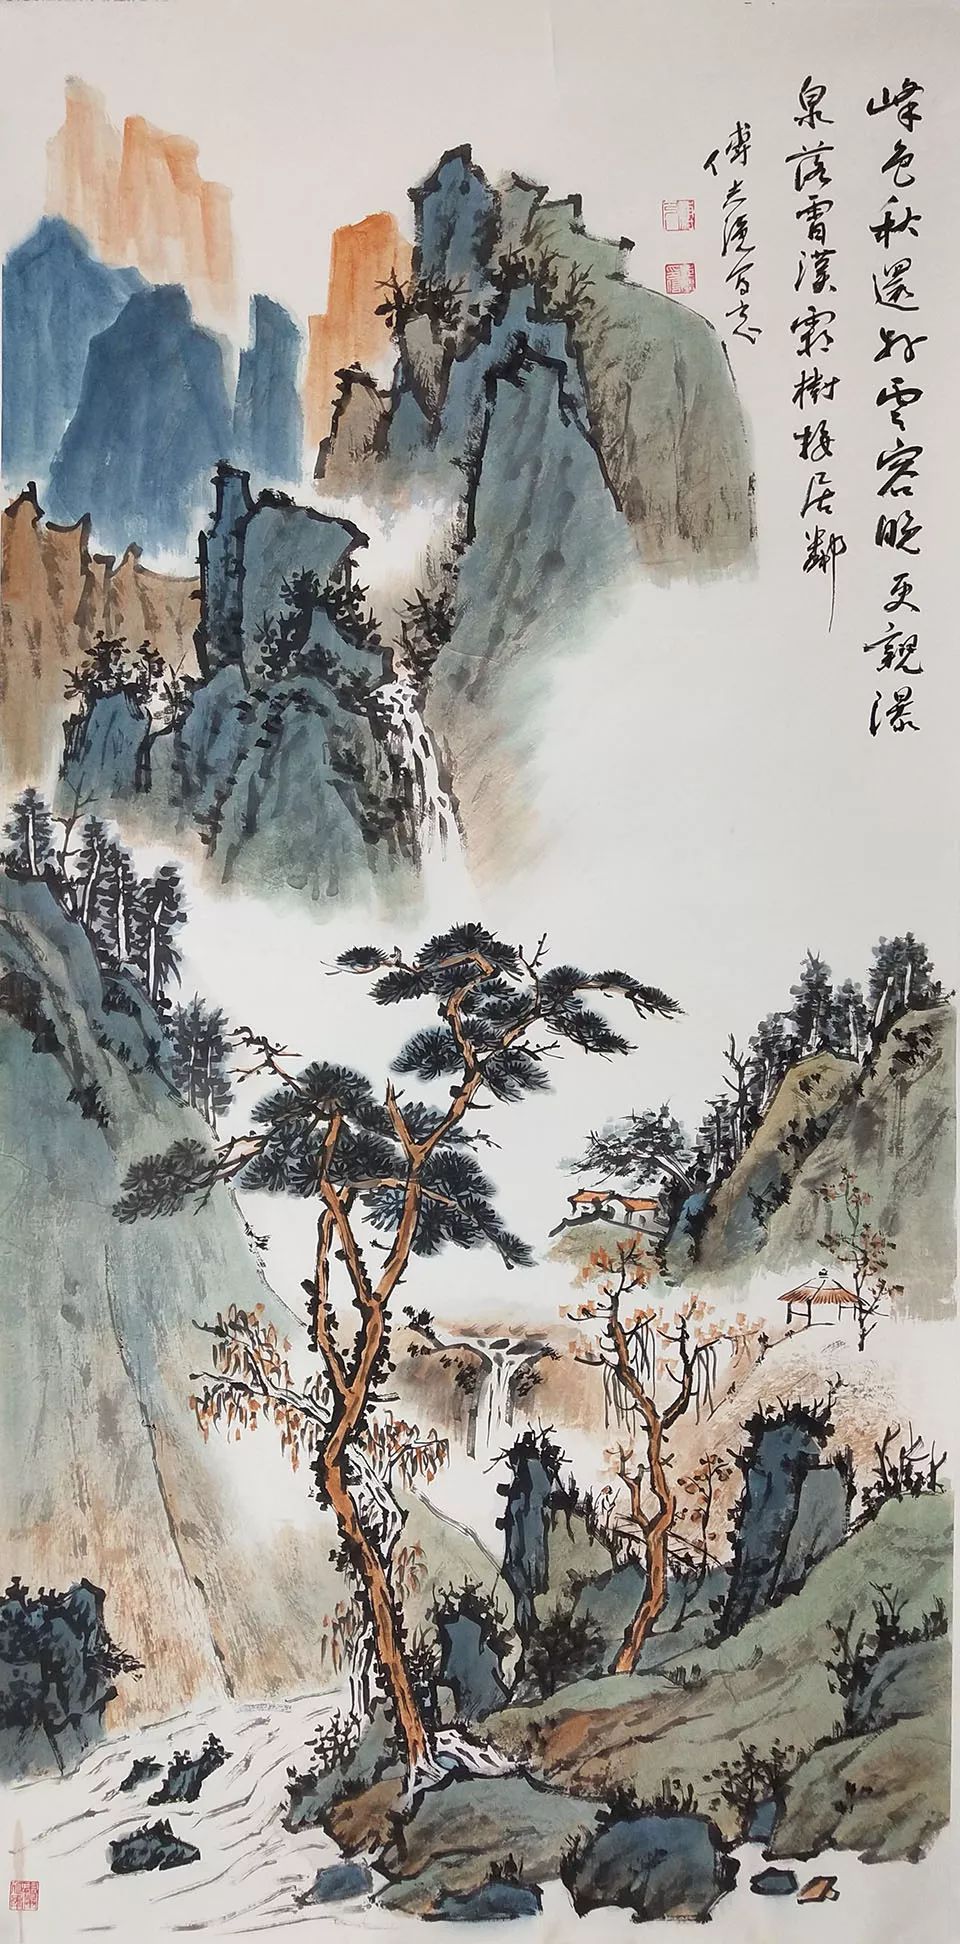 中国画创作研究院中国书画博士课程班第十轮授课与中期汇报展览在京